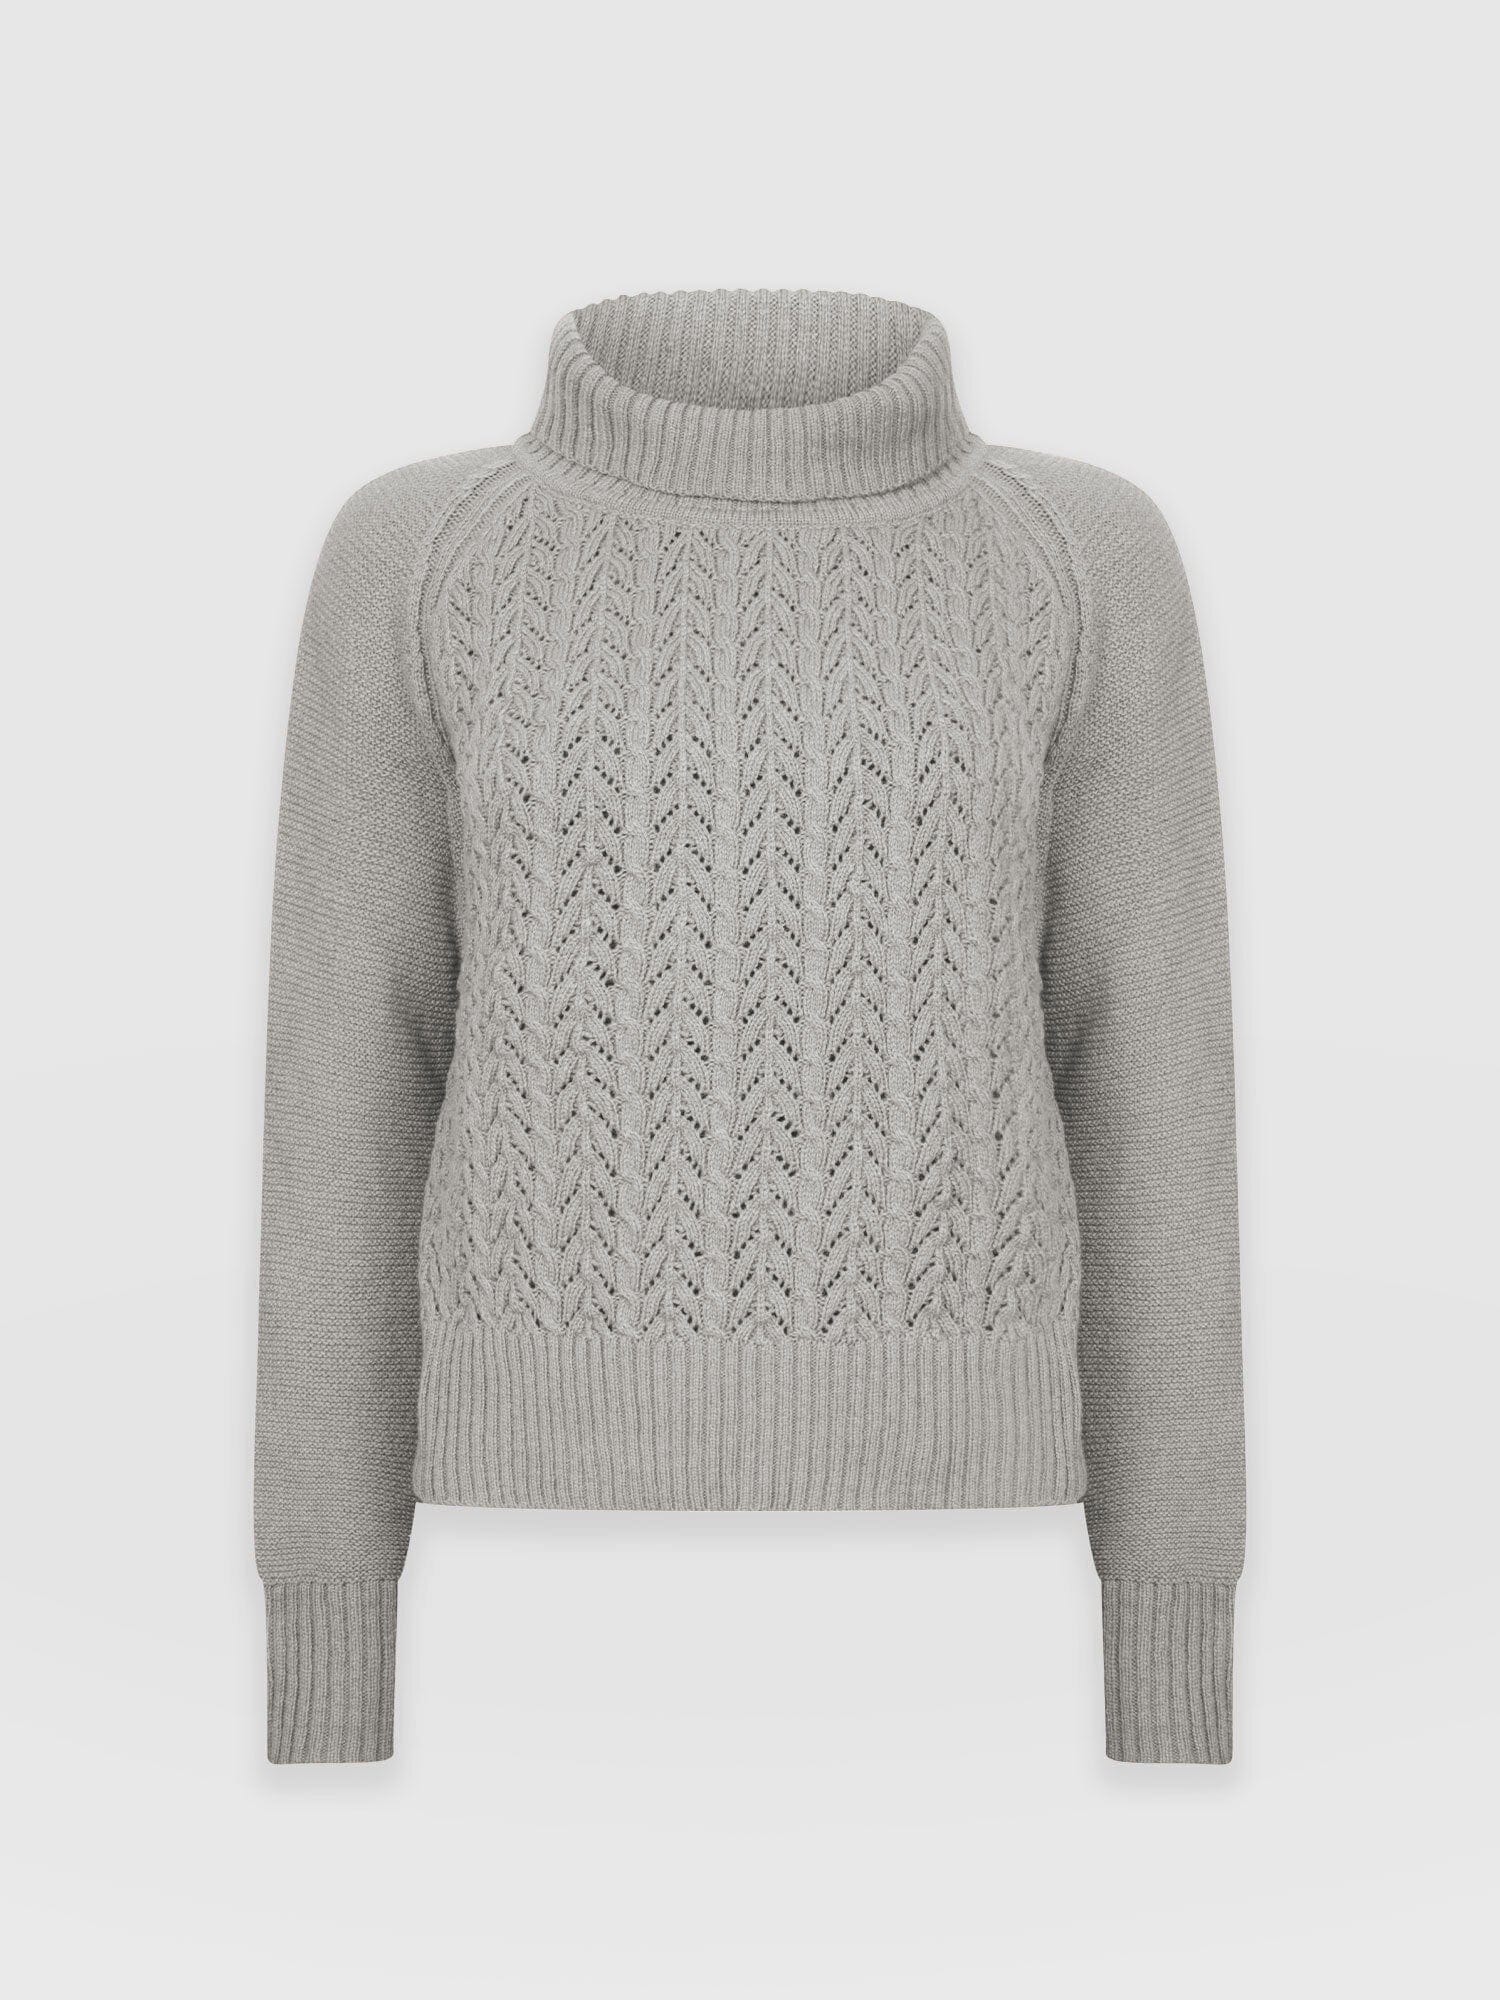 Glen Cable Knit Sweater Grey Melange - Women's Sweaters | Saint + 